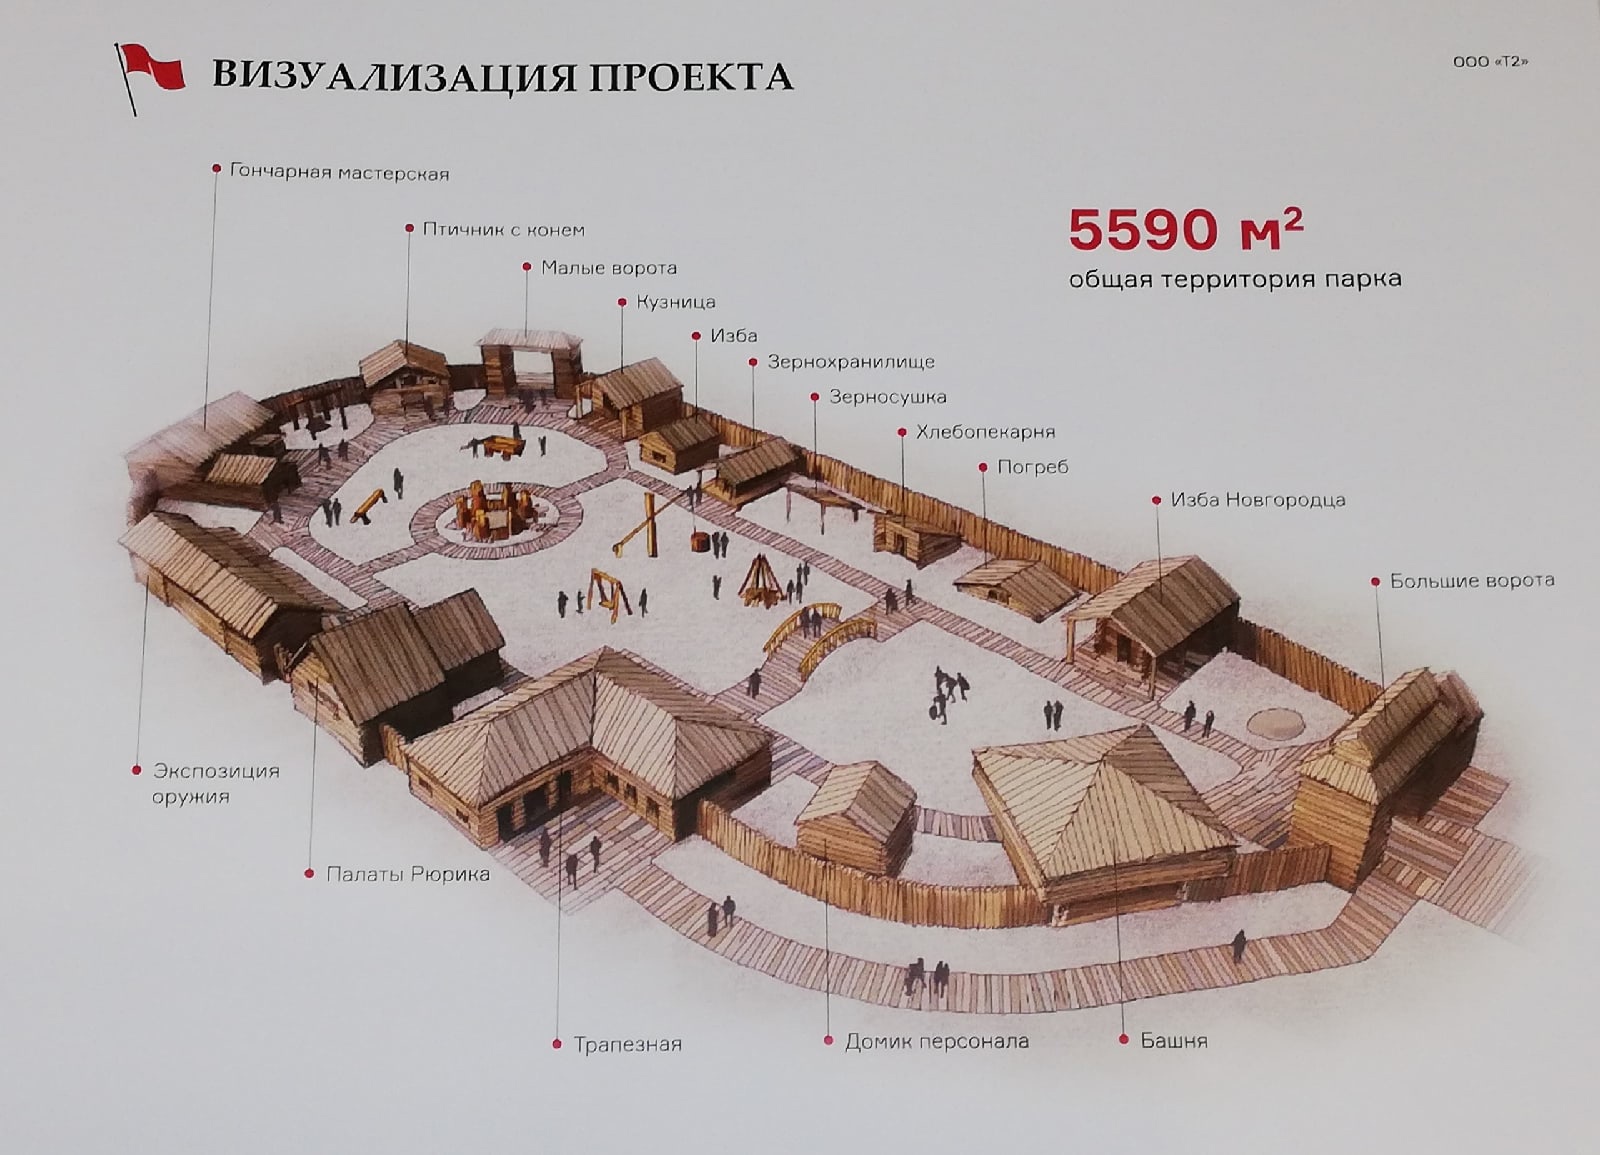 В Великом Новгороде появится исторический комплекс